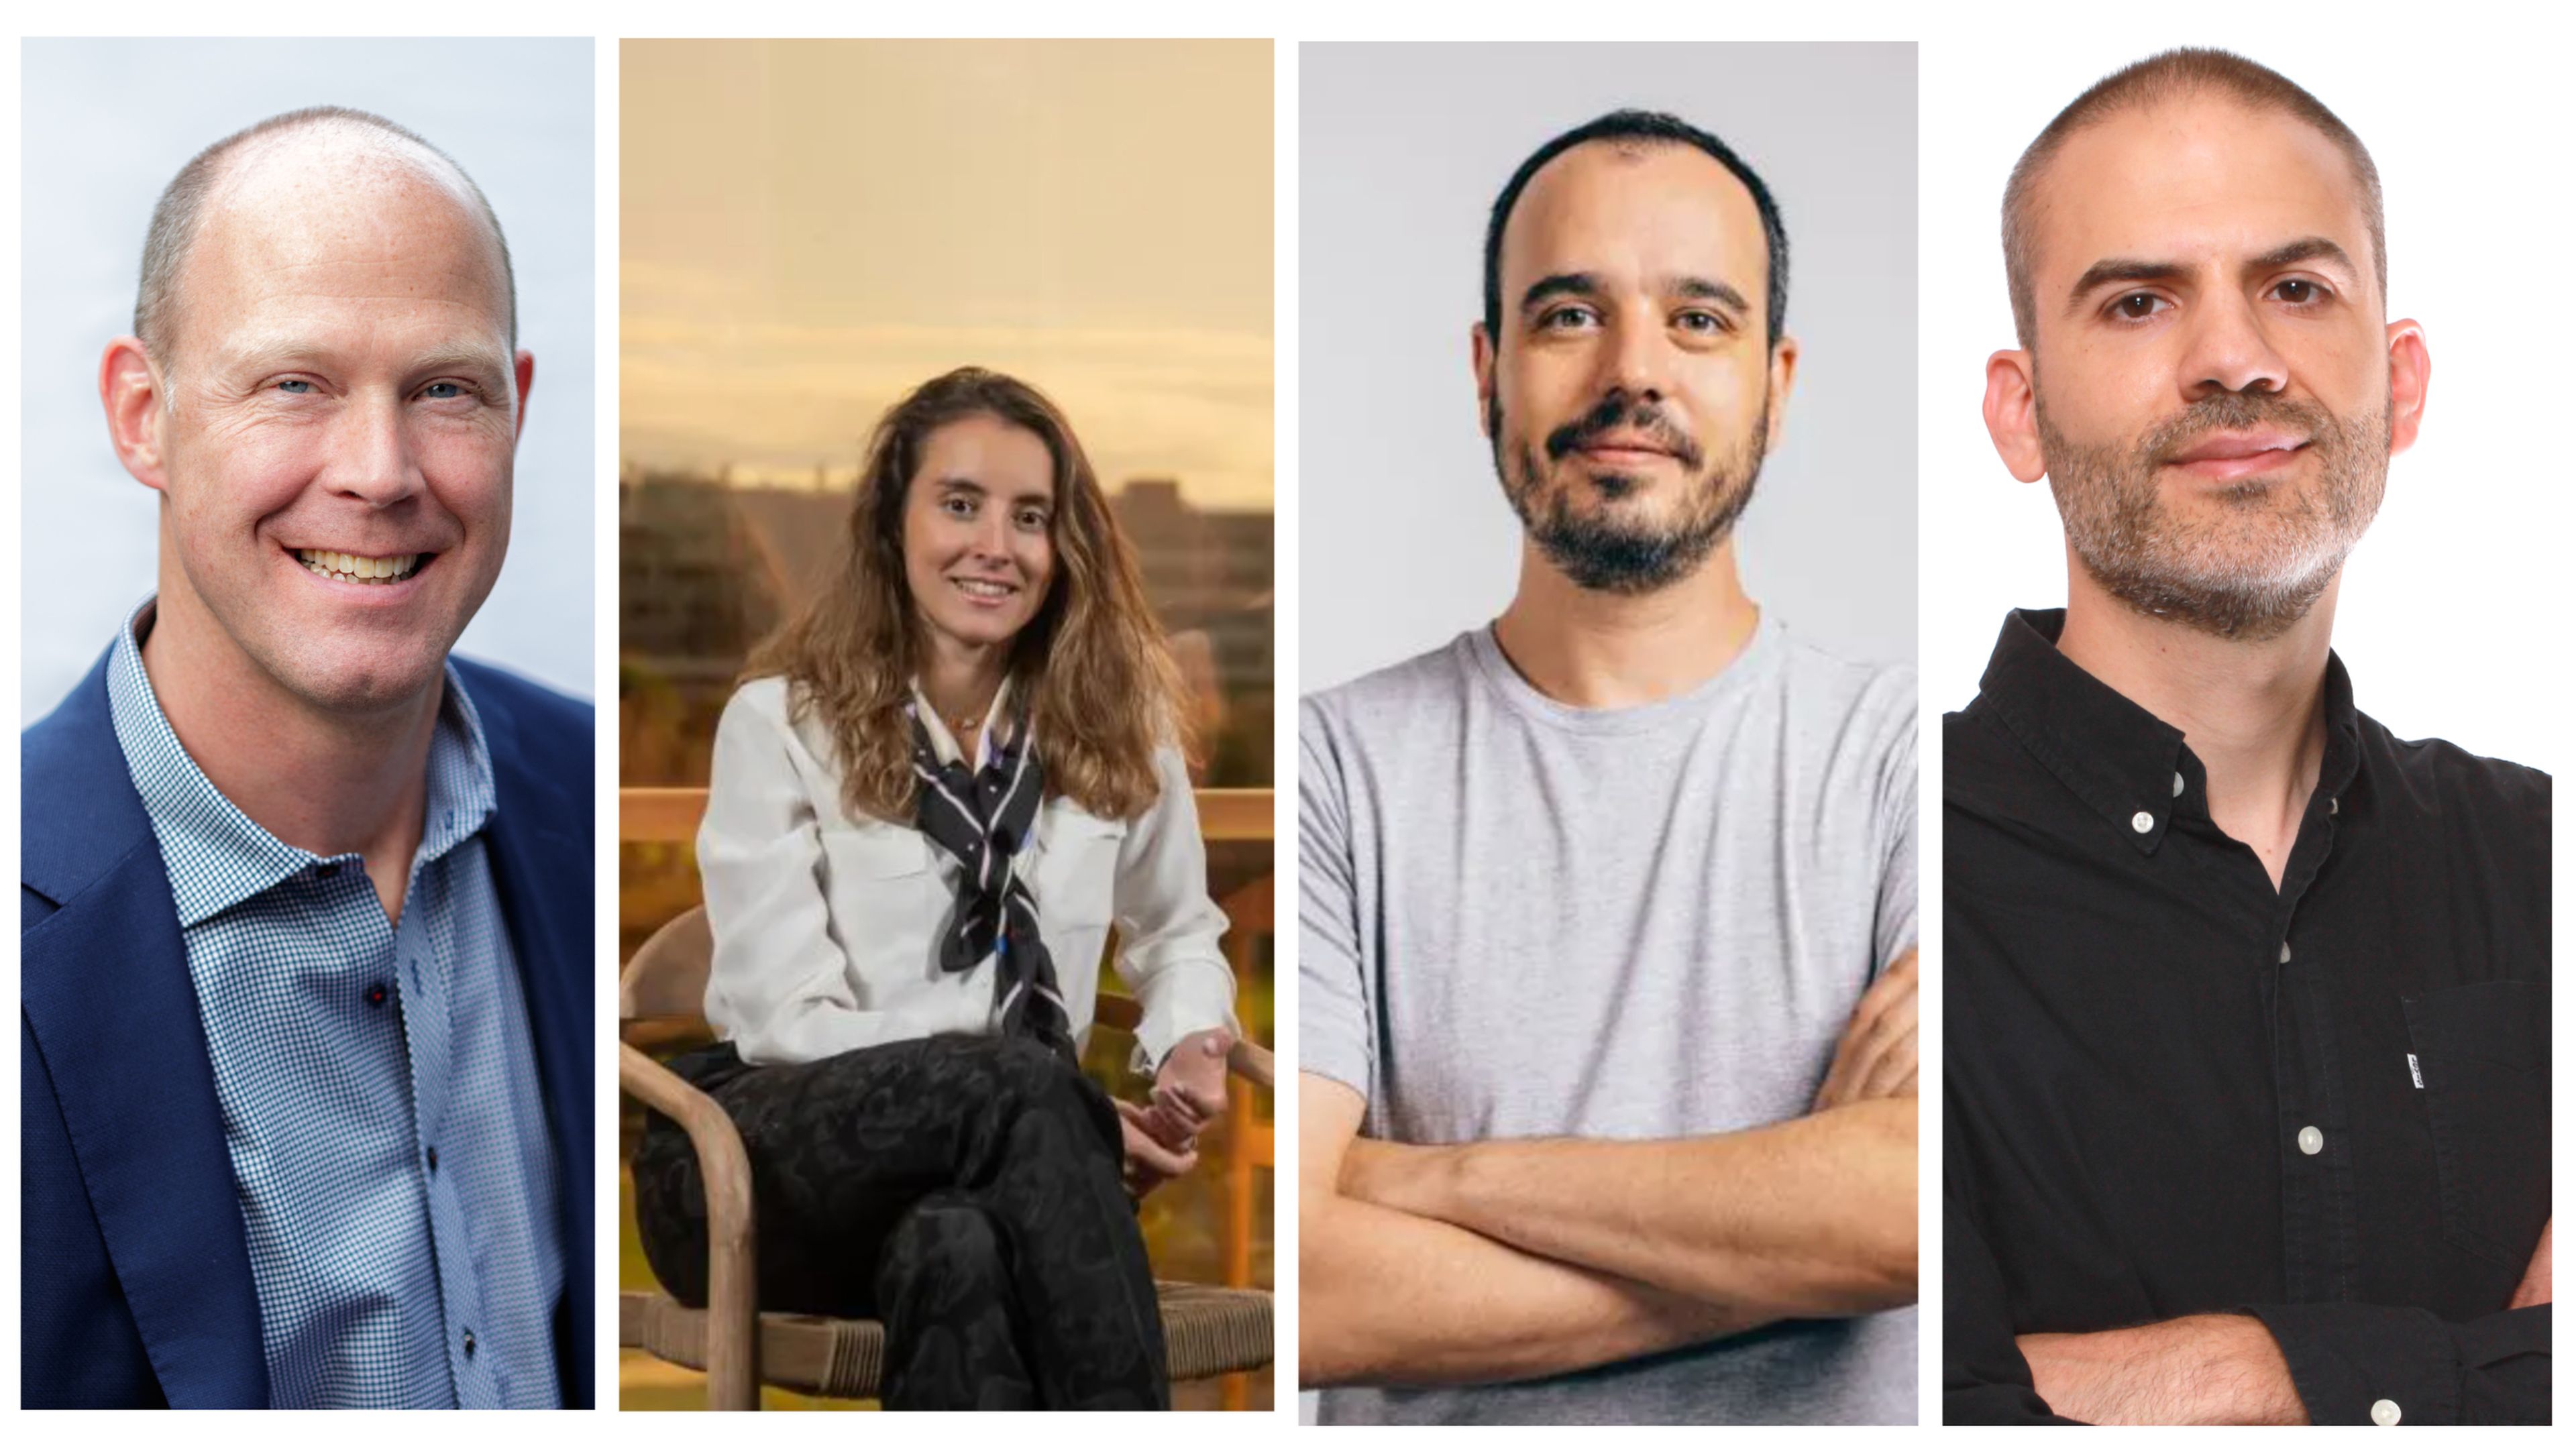 De izquierda a derecha: Marc van Zadelhoff, CEO de Devo; Yasmine Fage, cofundadora de Goggo Network; Jaime Bosch, CEO de Voicemod; y Juan Rubio, CEO de Genially.